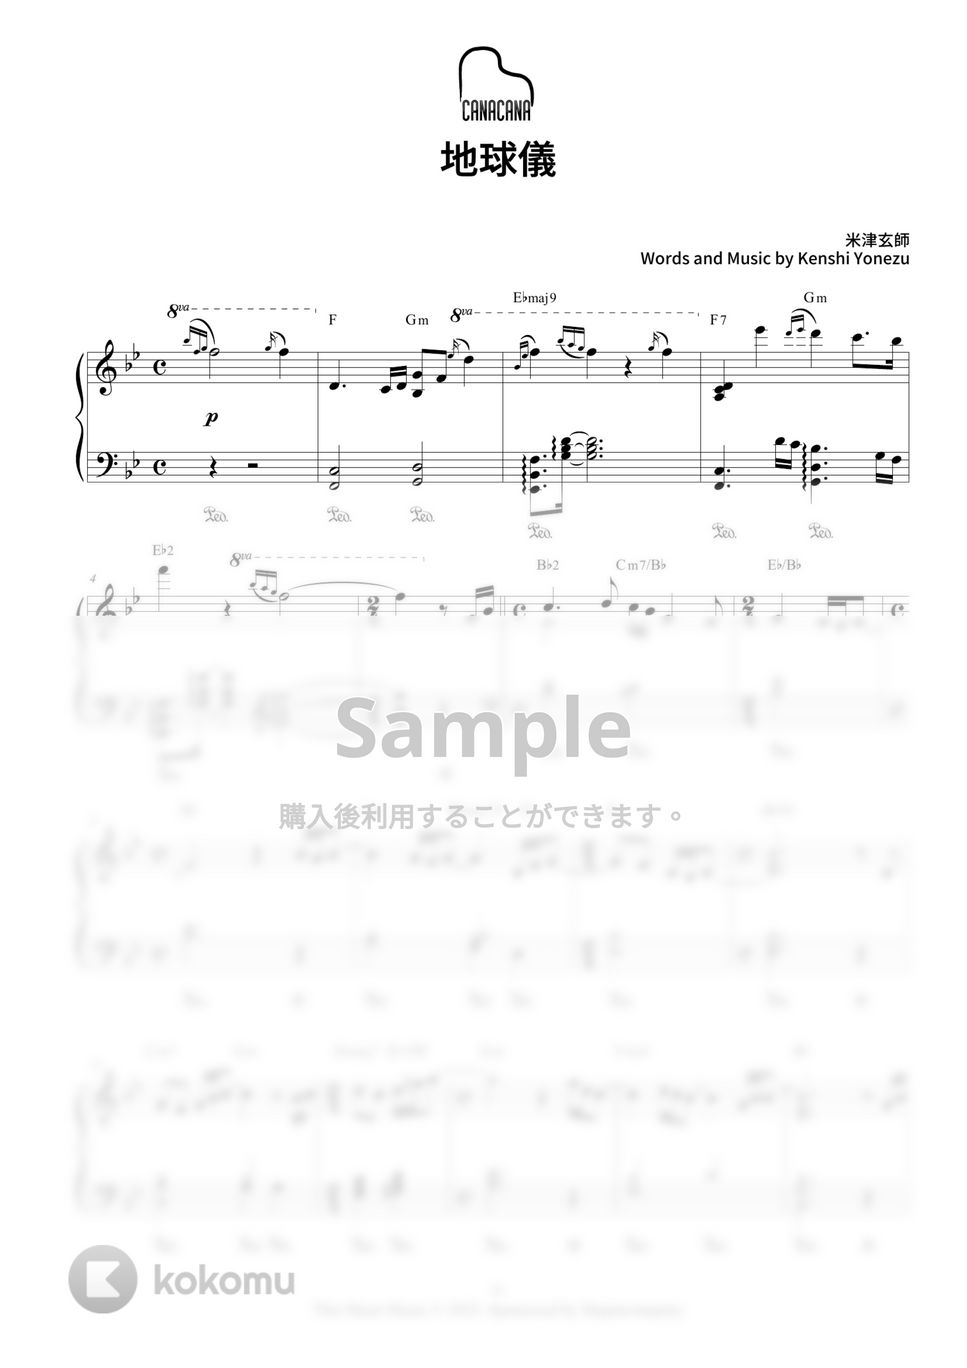 米津玄師 - 地球儀 (『君たちはどう生きるか』挿入曲) by CANACANA family